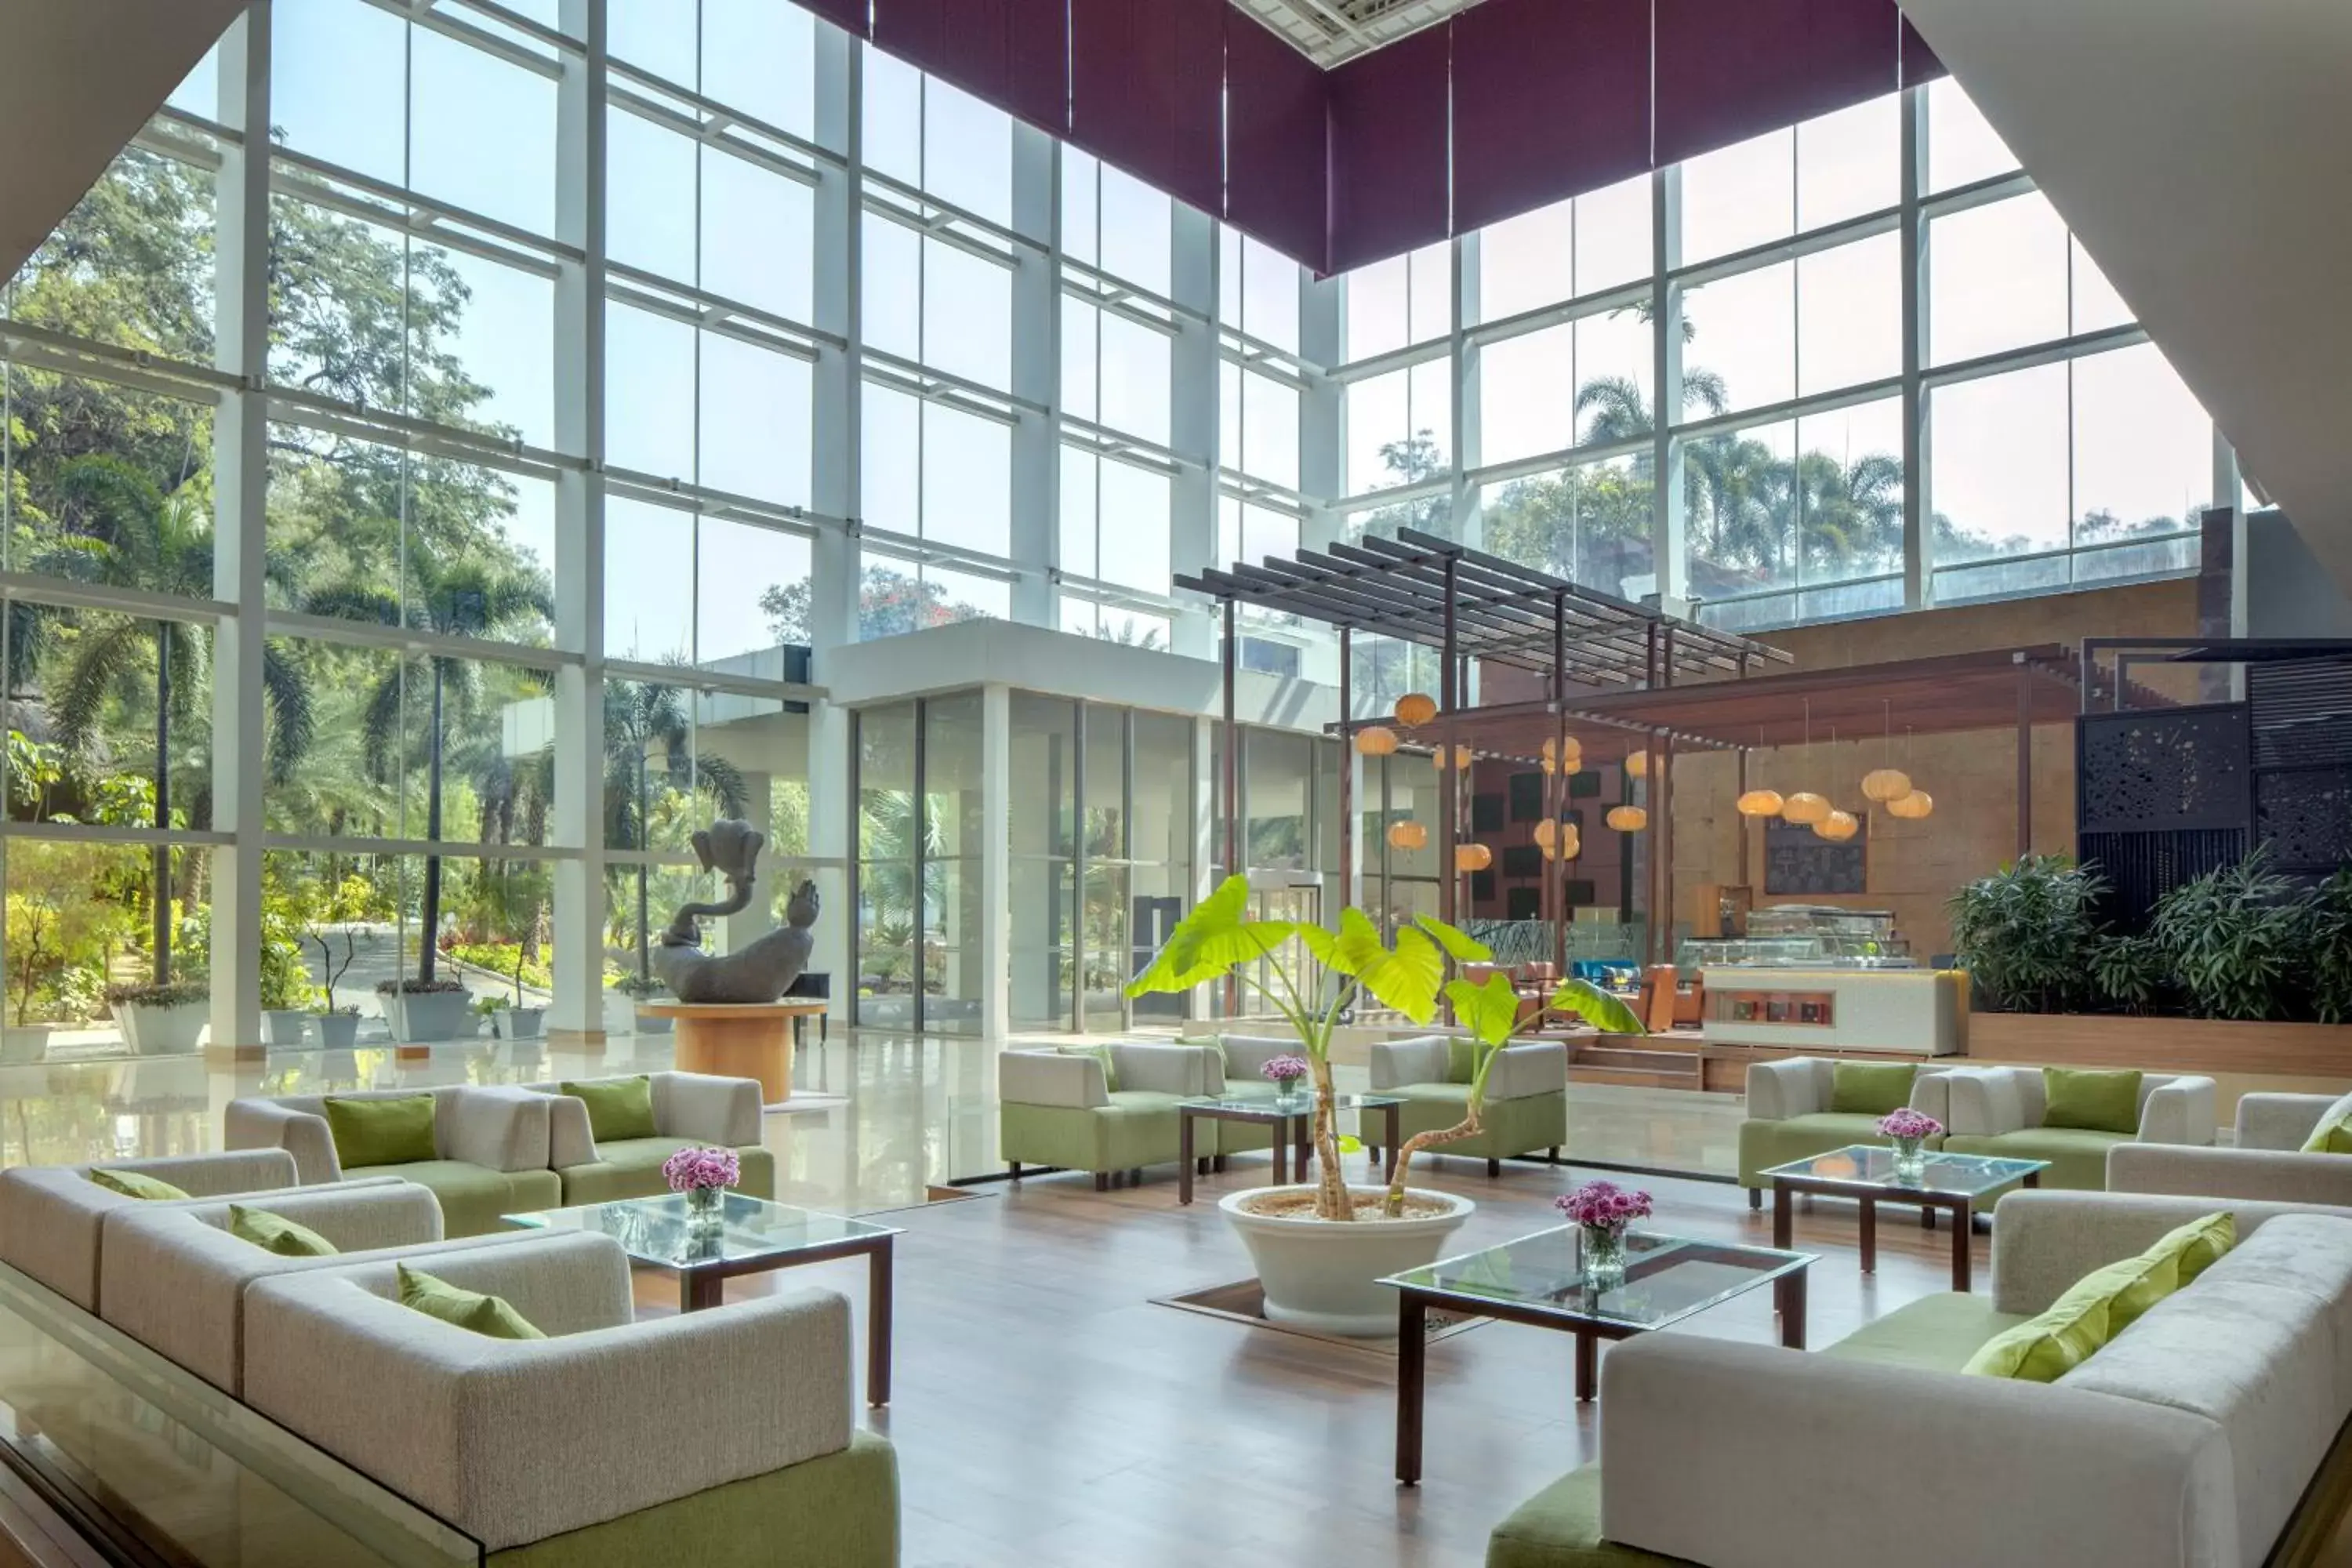 Lobby or reception in Radisson Blu Plaza Hotel Hyderabad Banjara Hills